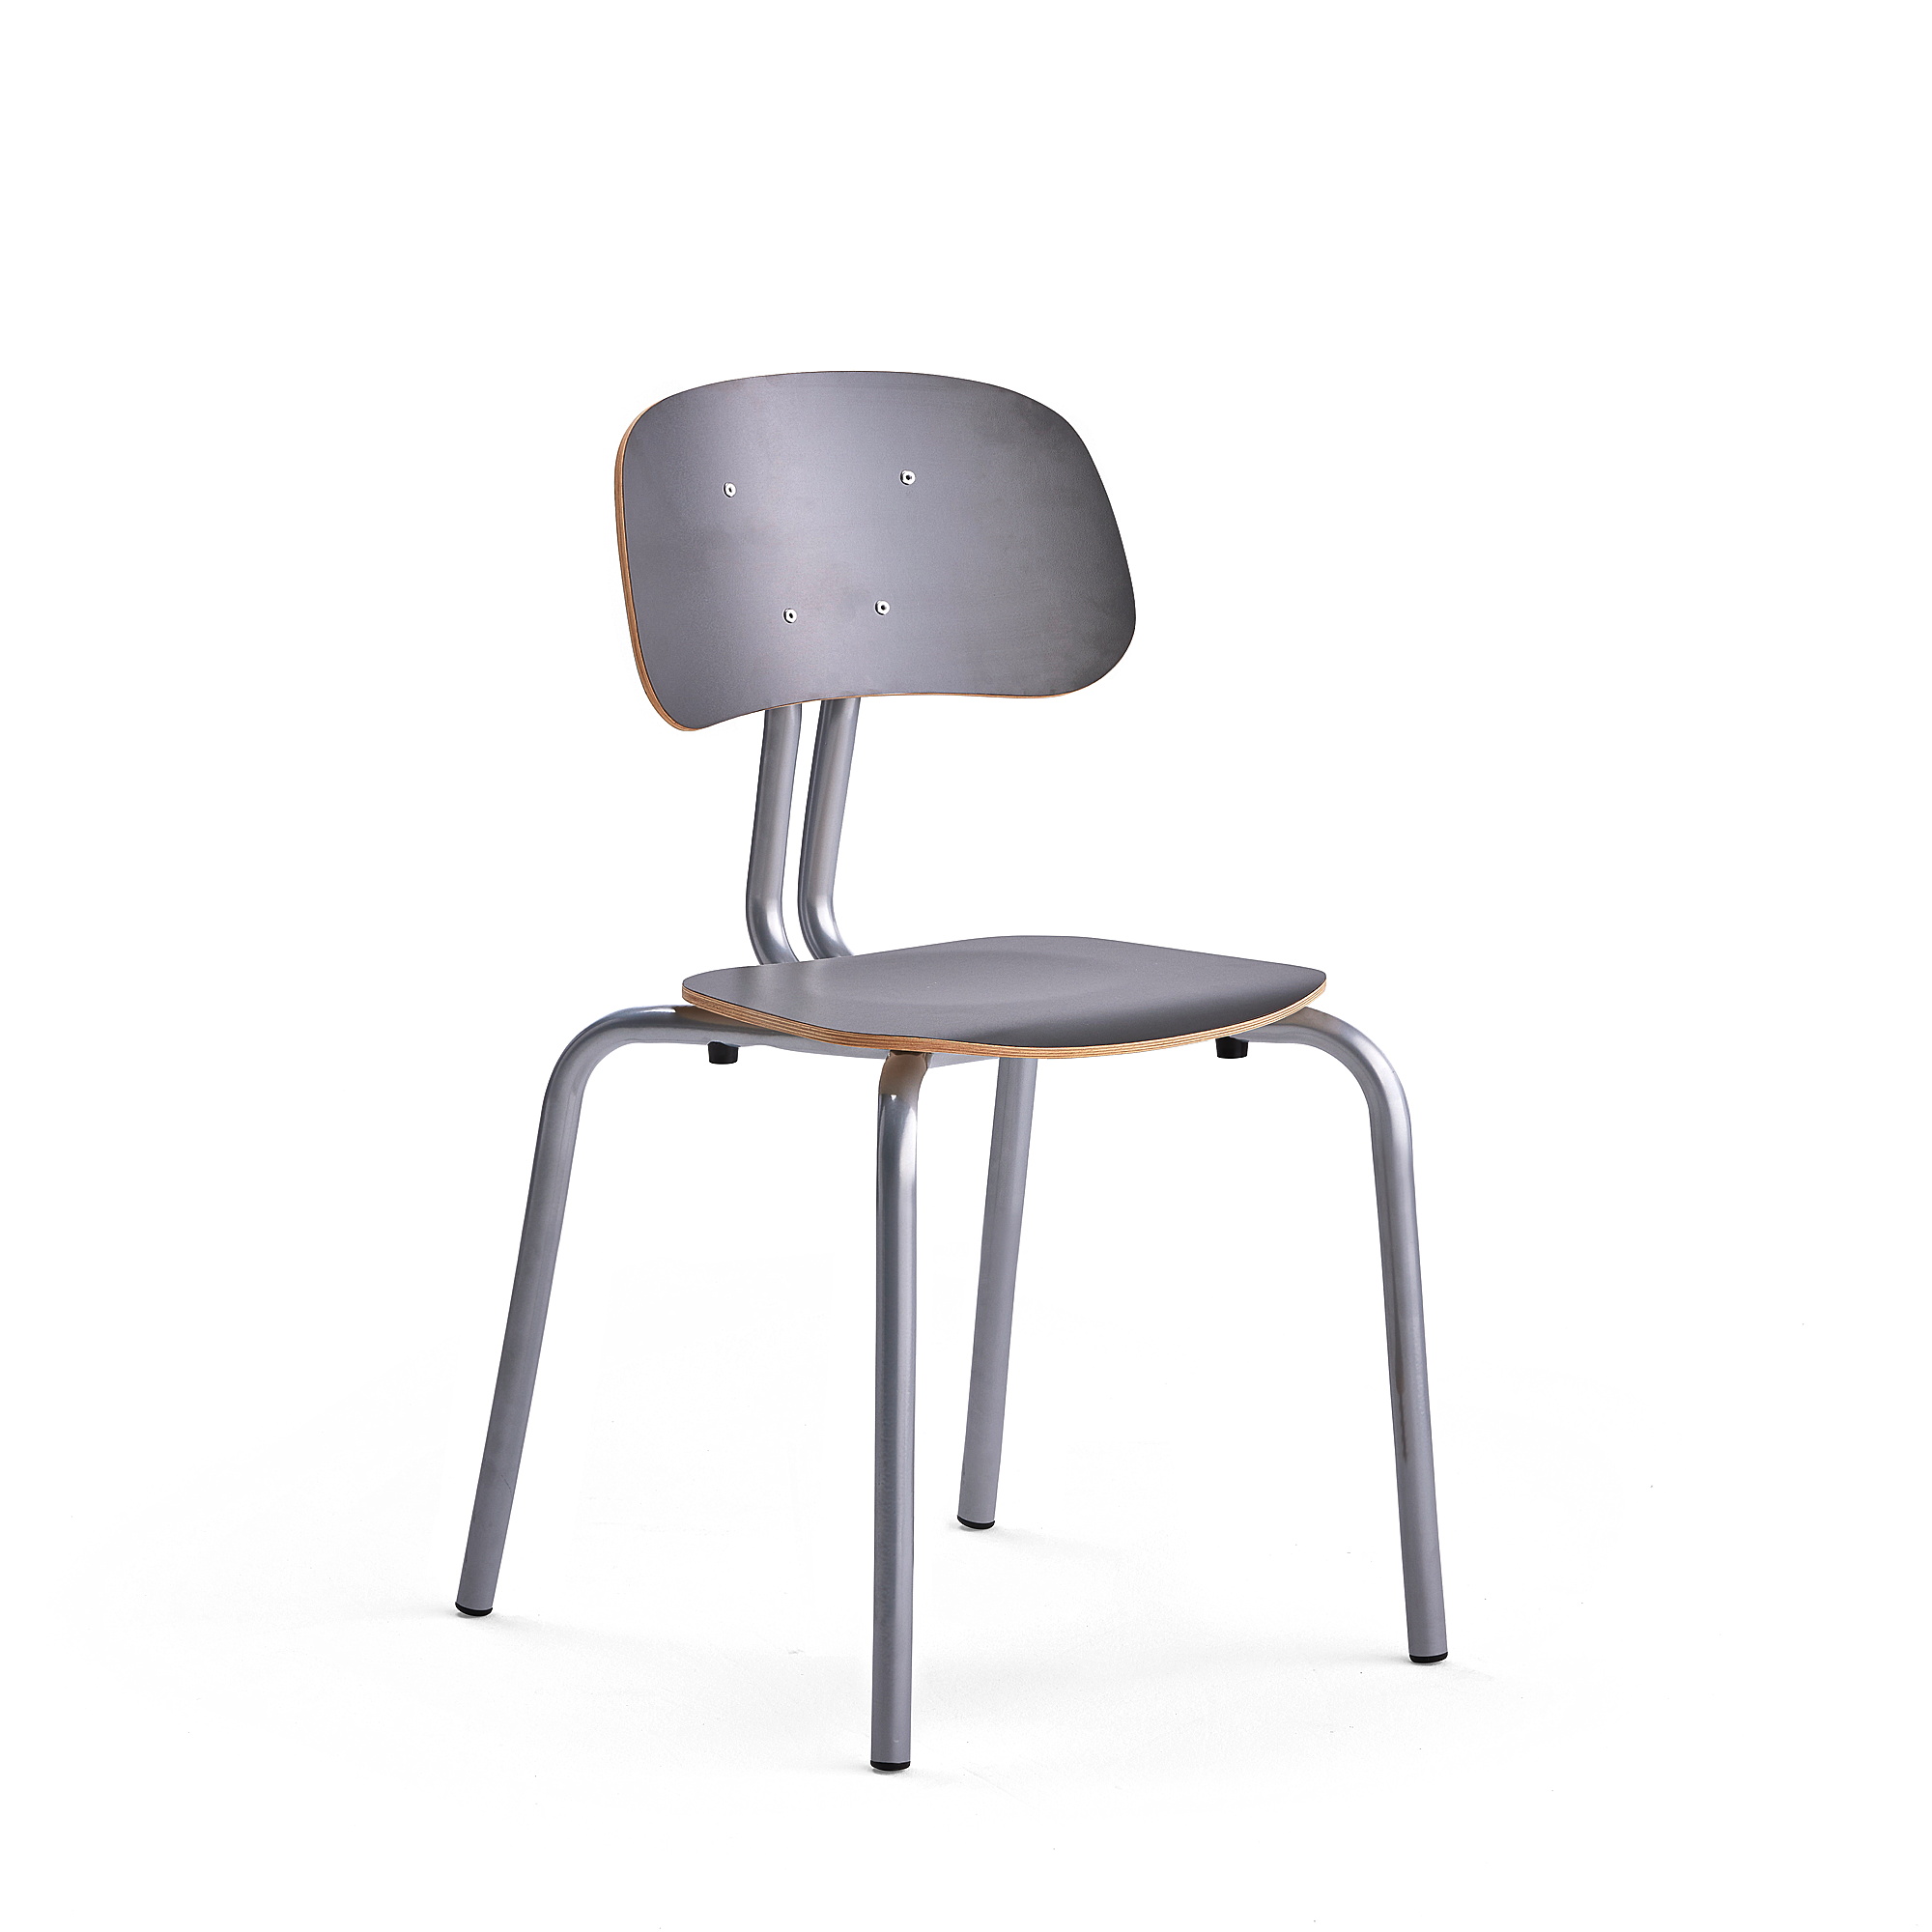 Školní židle YNGVE, 4 nohy, výška 460 mm, stříbrná/antracitově šedá